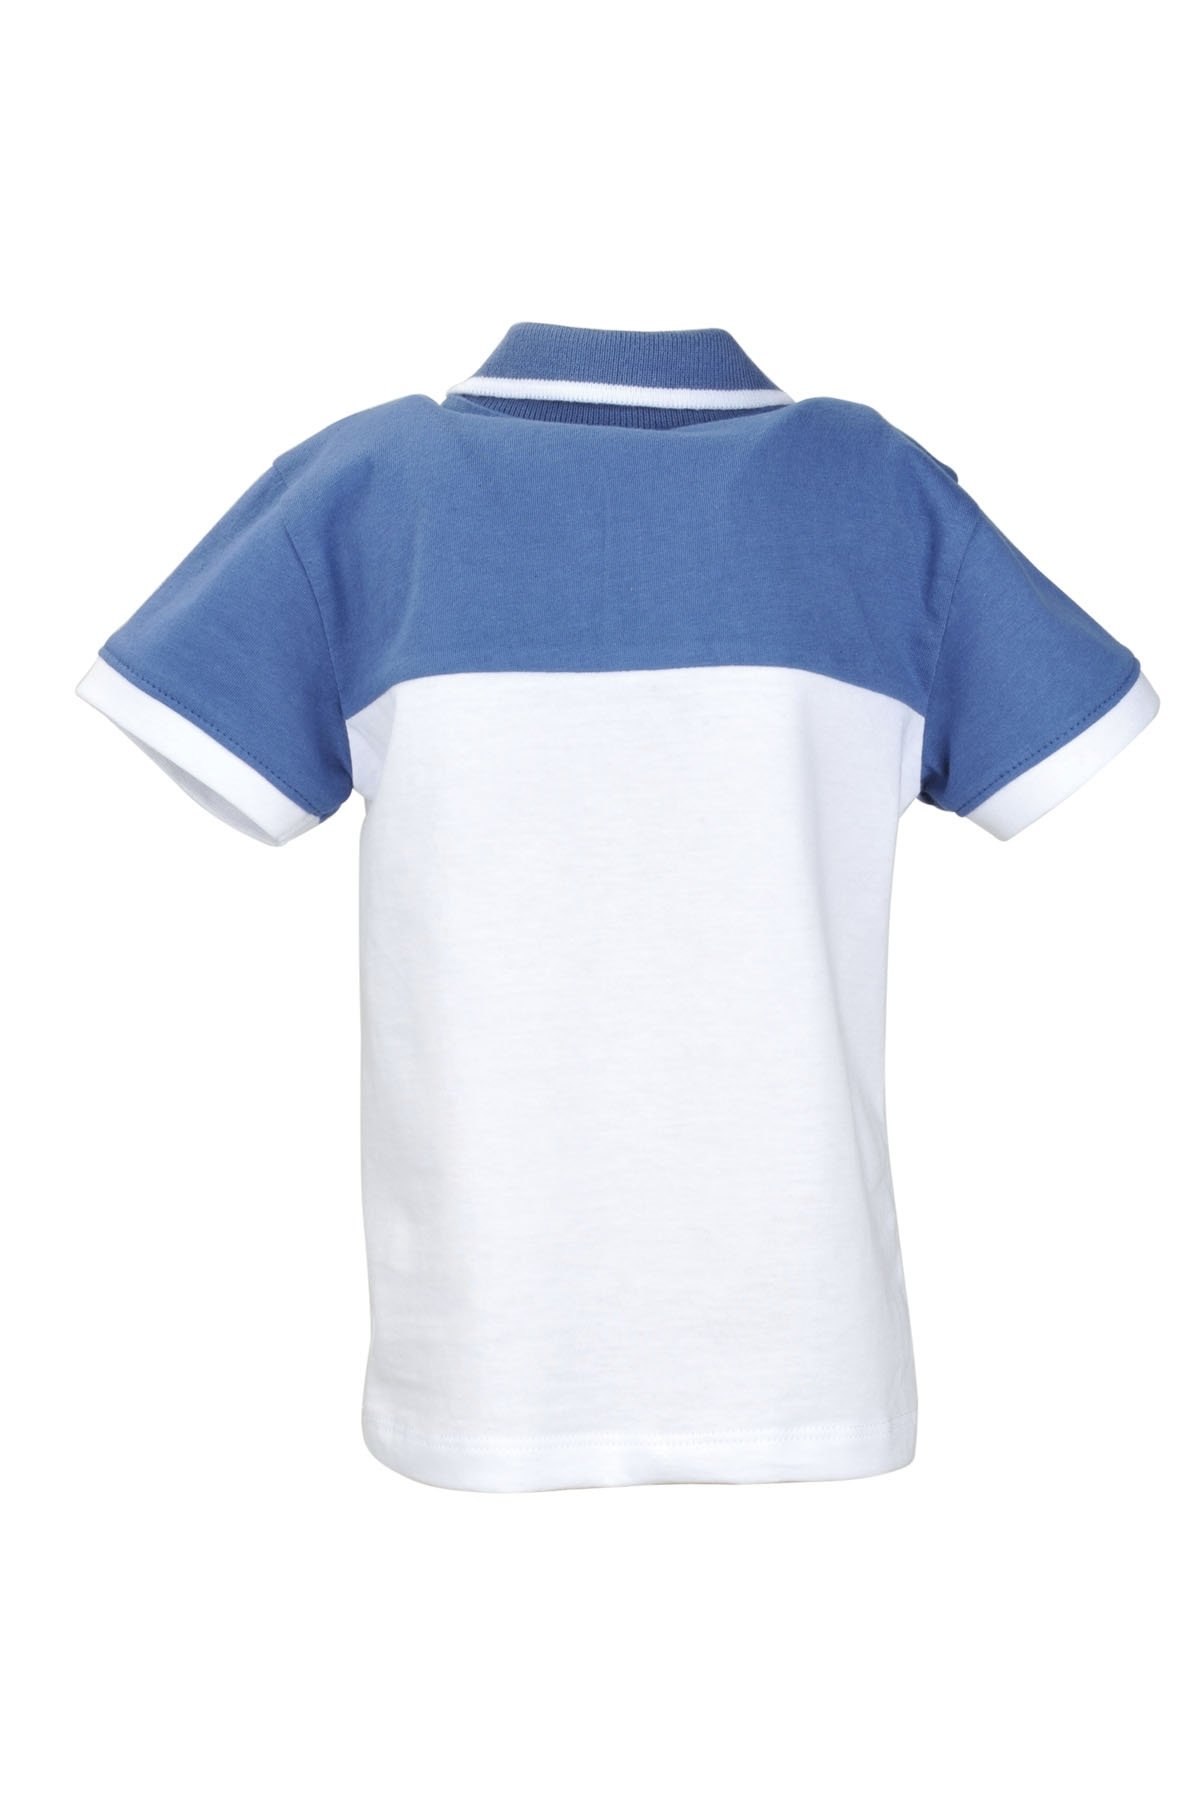 MININIO Erkek Bebek Mavi Renk Bloklu Polo Yaka T-Shirt (9ay-4yaş)